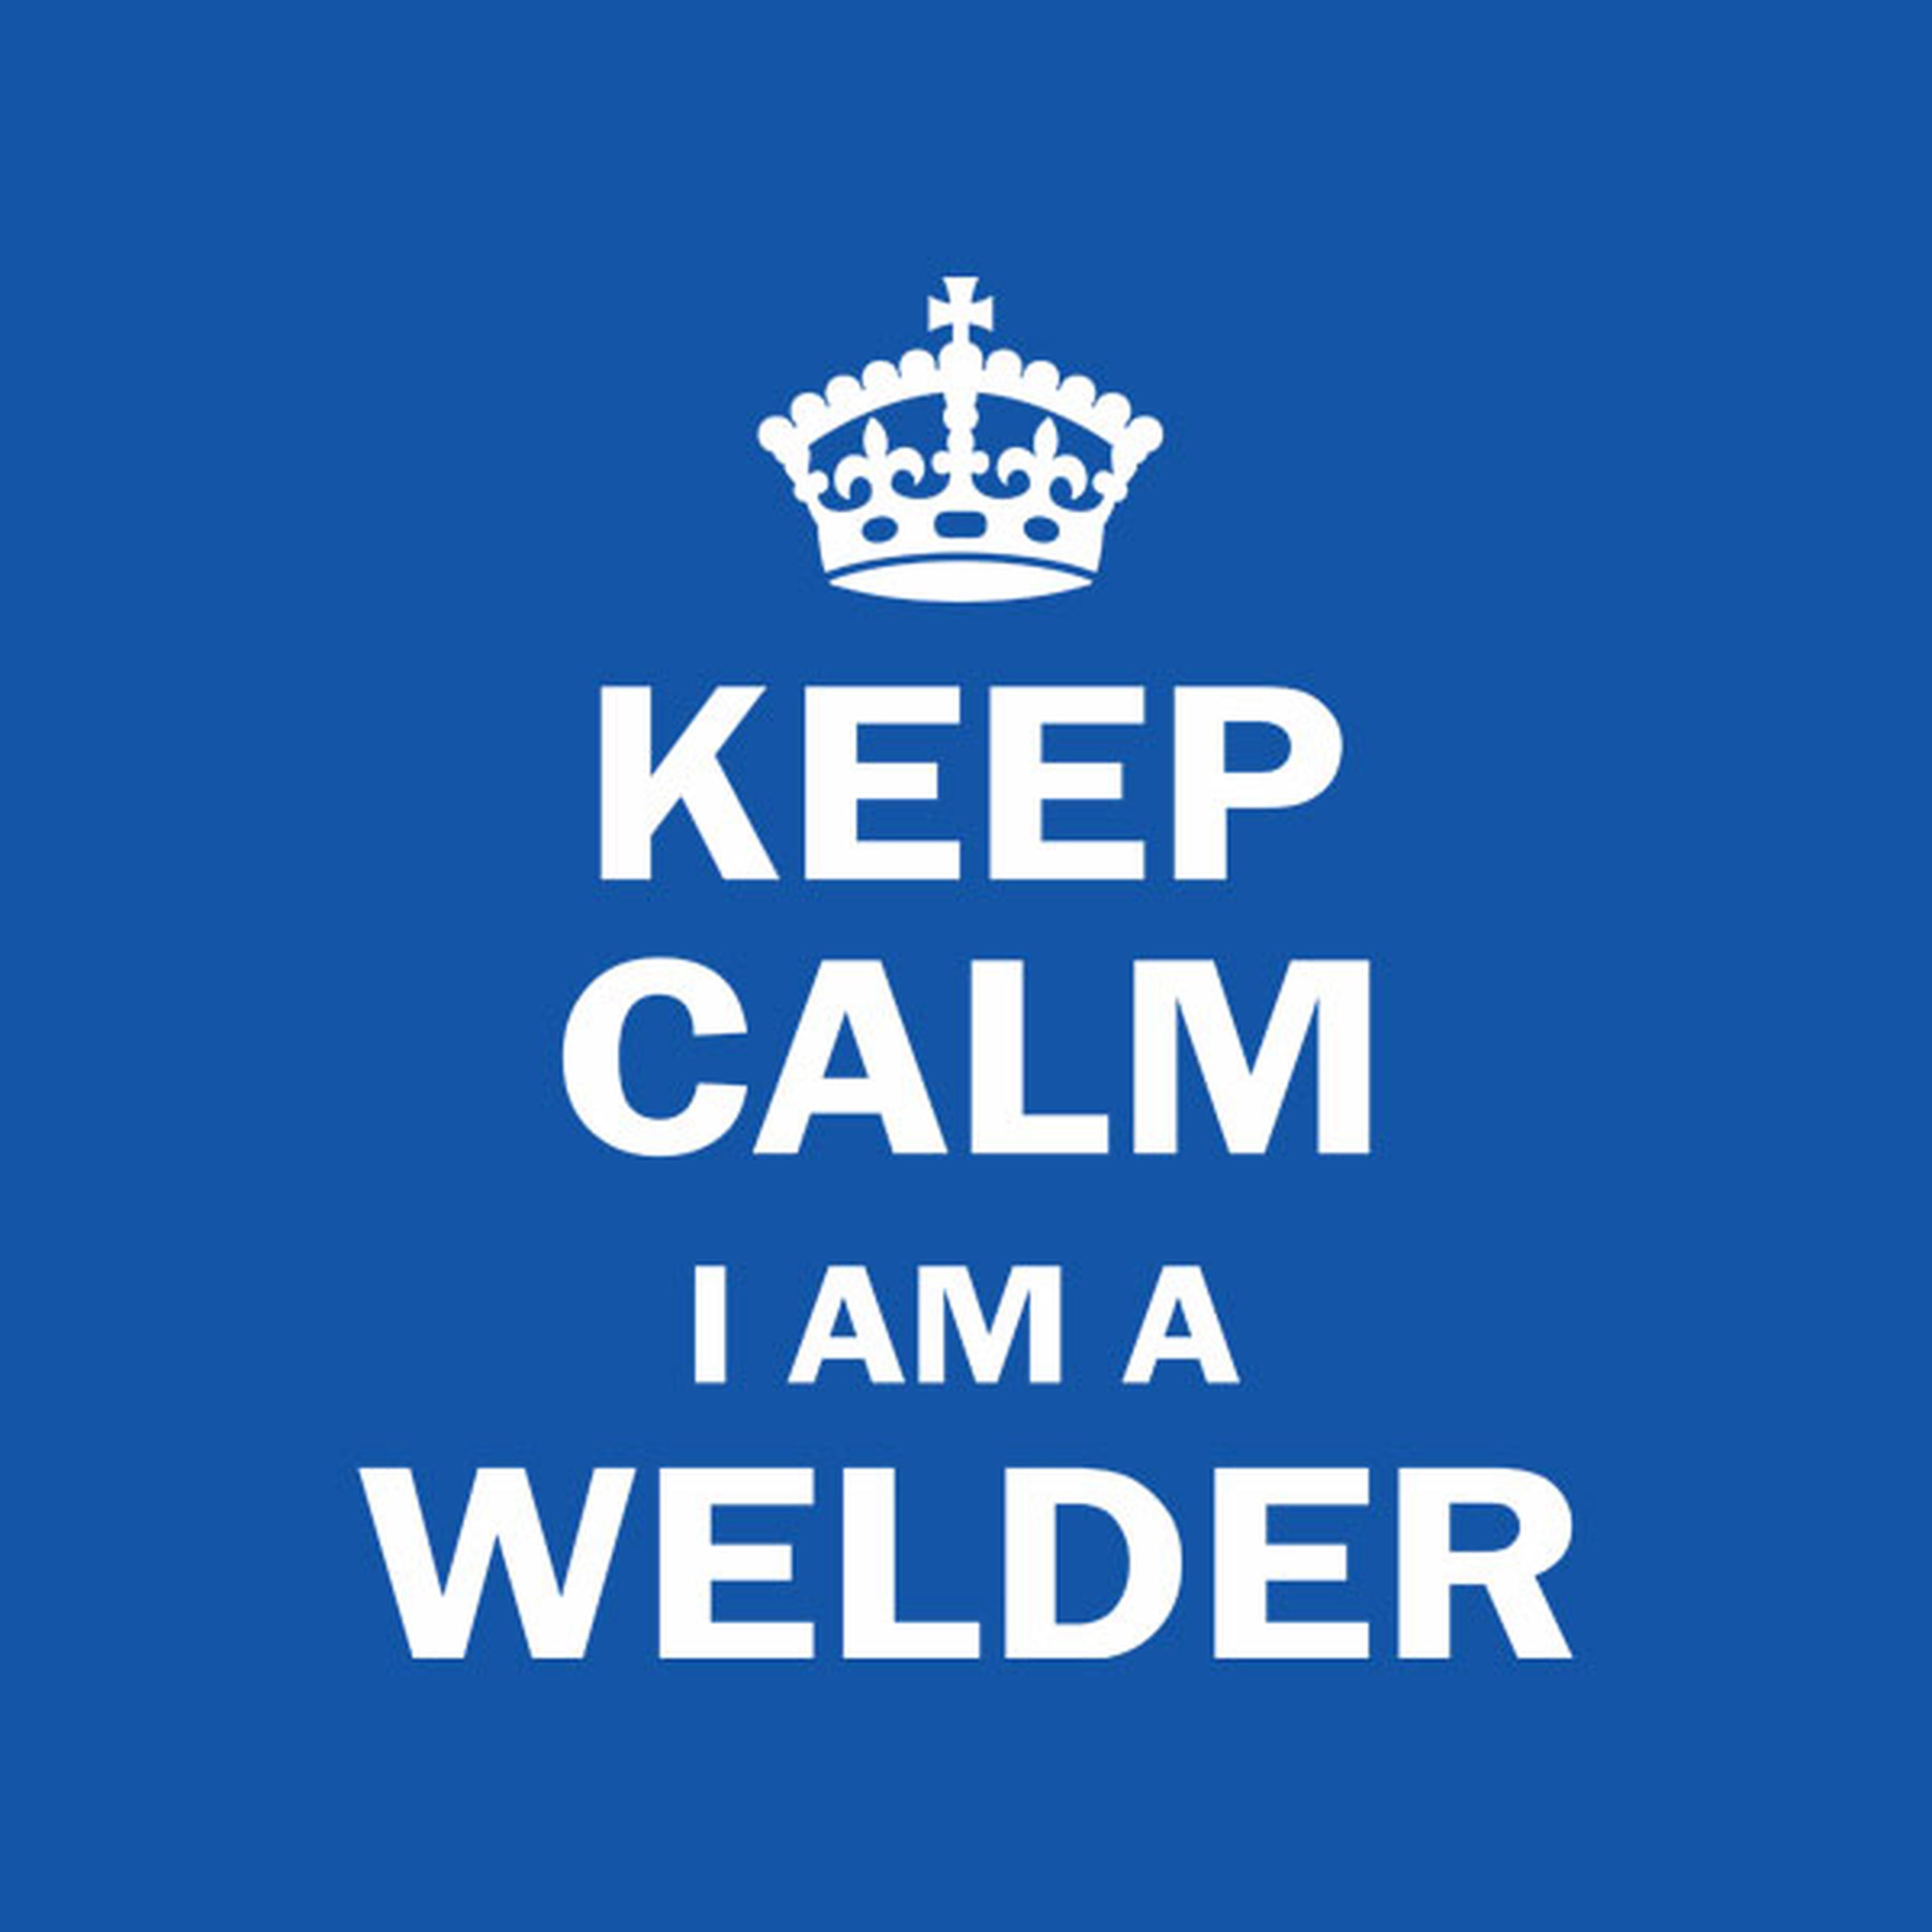 Keep calm I am a welder - T-shirt